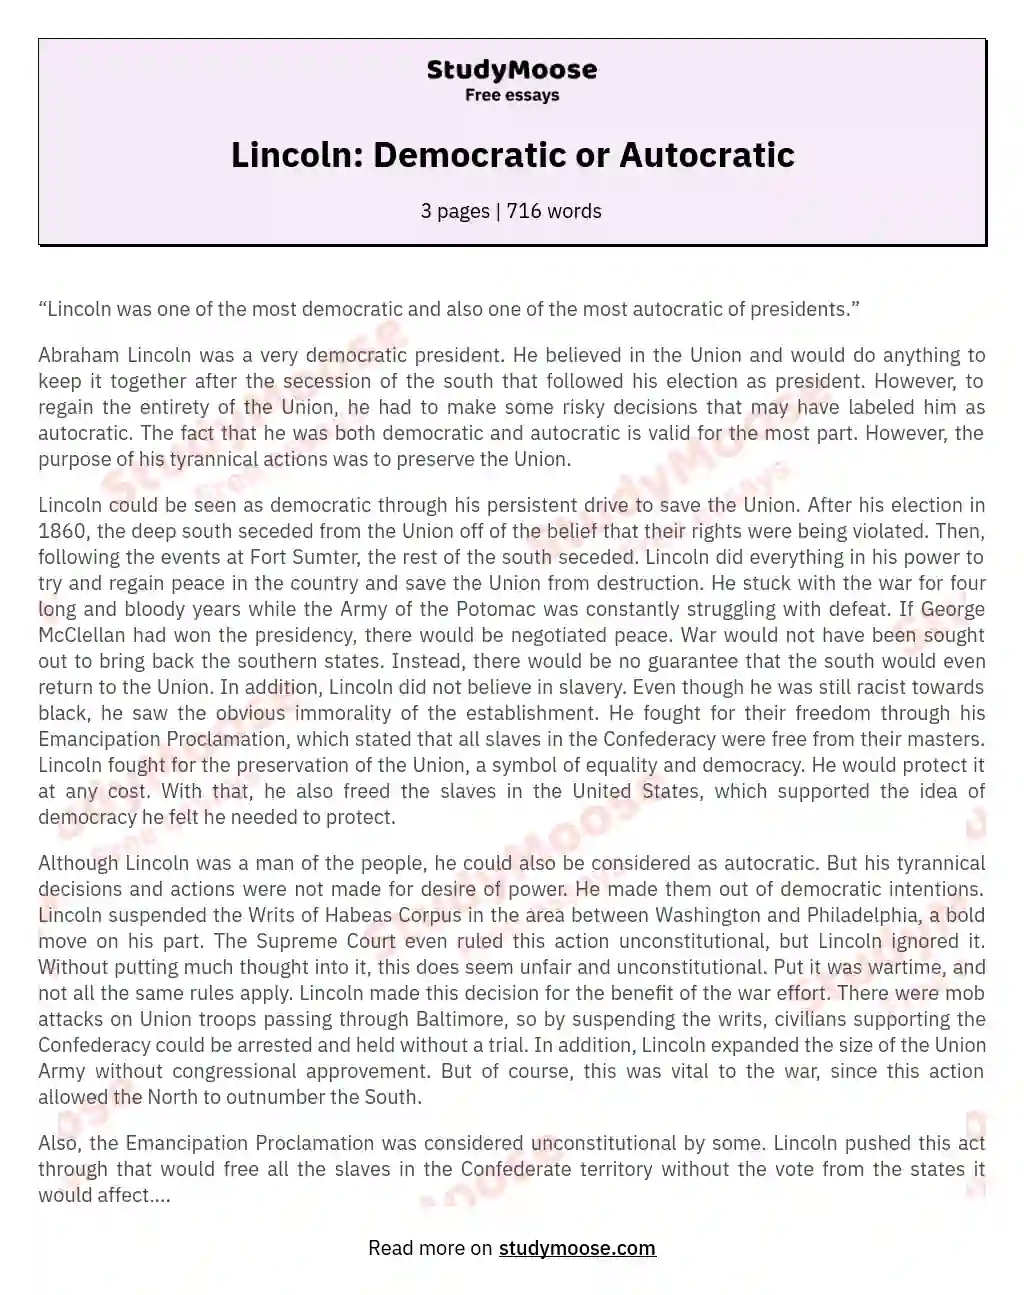 Lincoln: Democratic or Autocratic essay